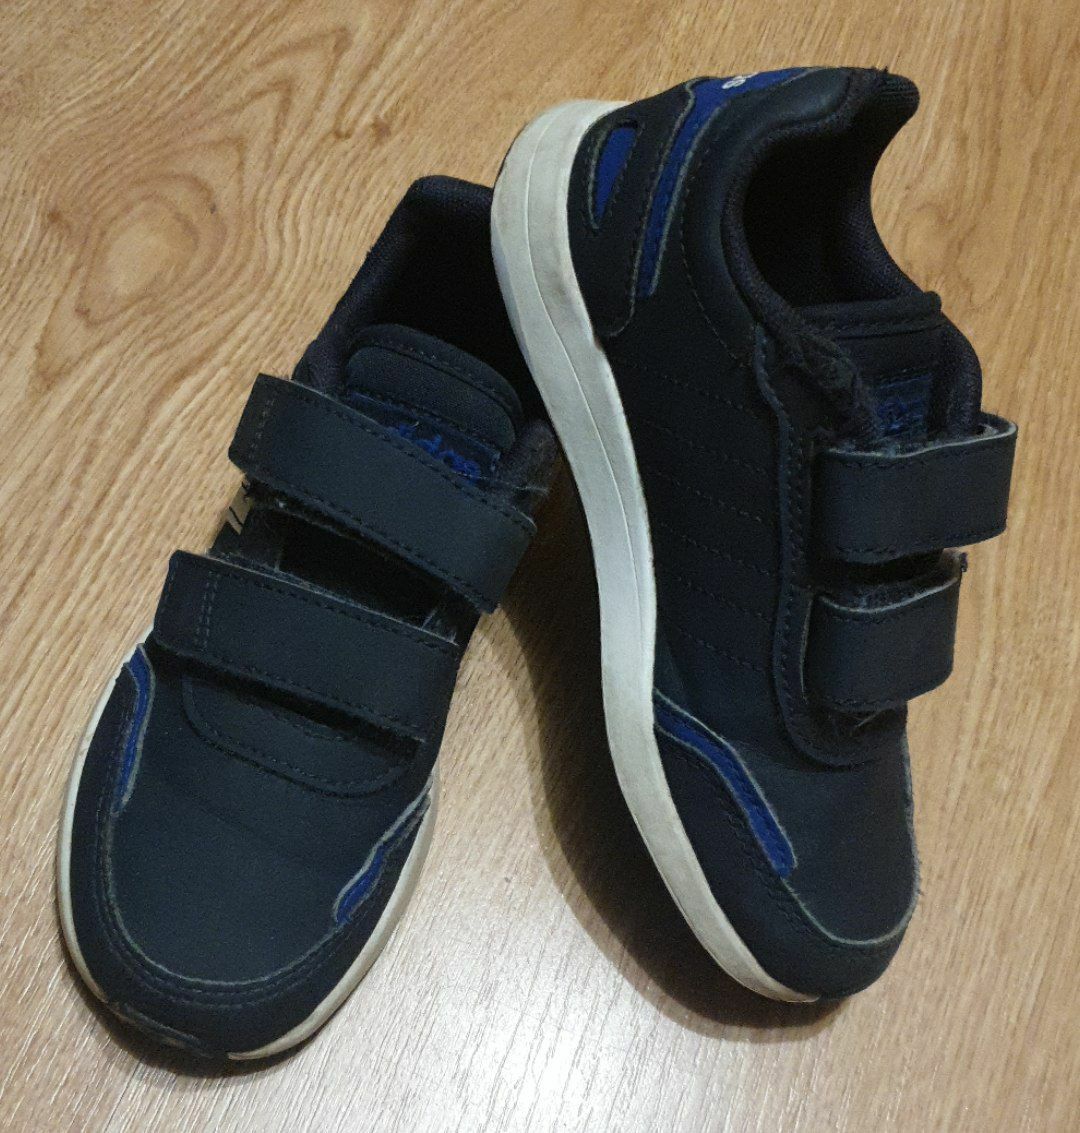 Buty Adidasa Rozm.28 dł.wkł 19 cm